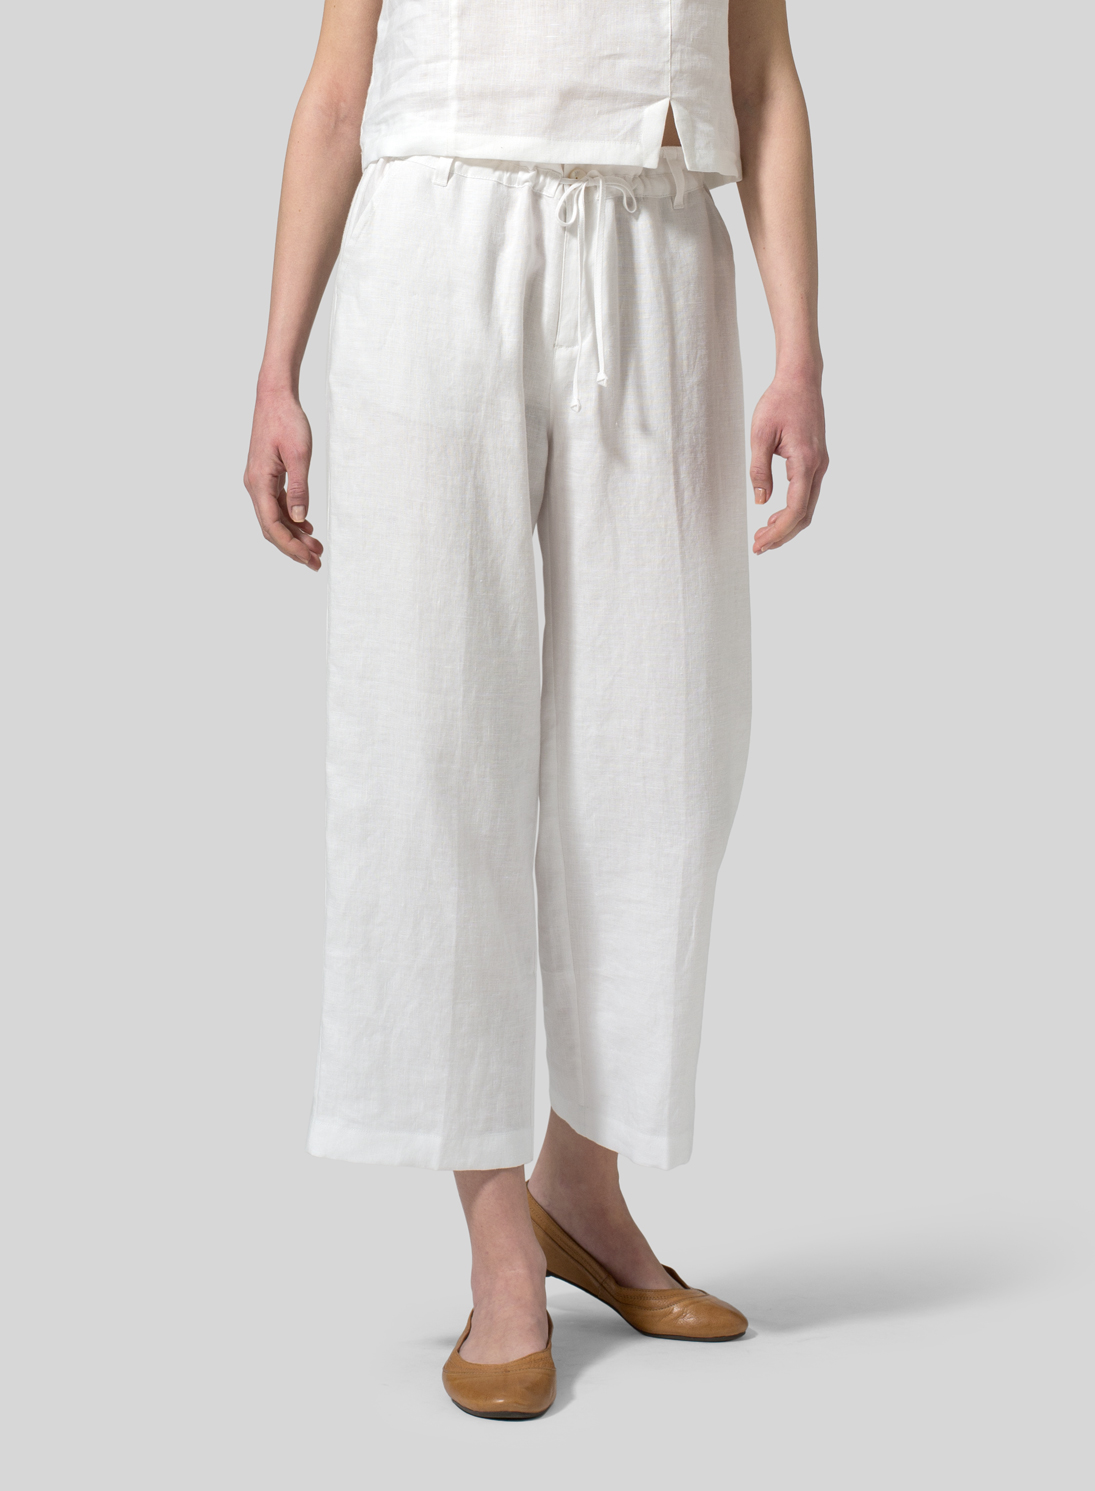 Linen Drawstring Cropped Pants - Plus Size